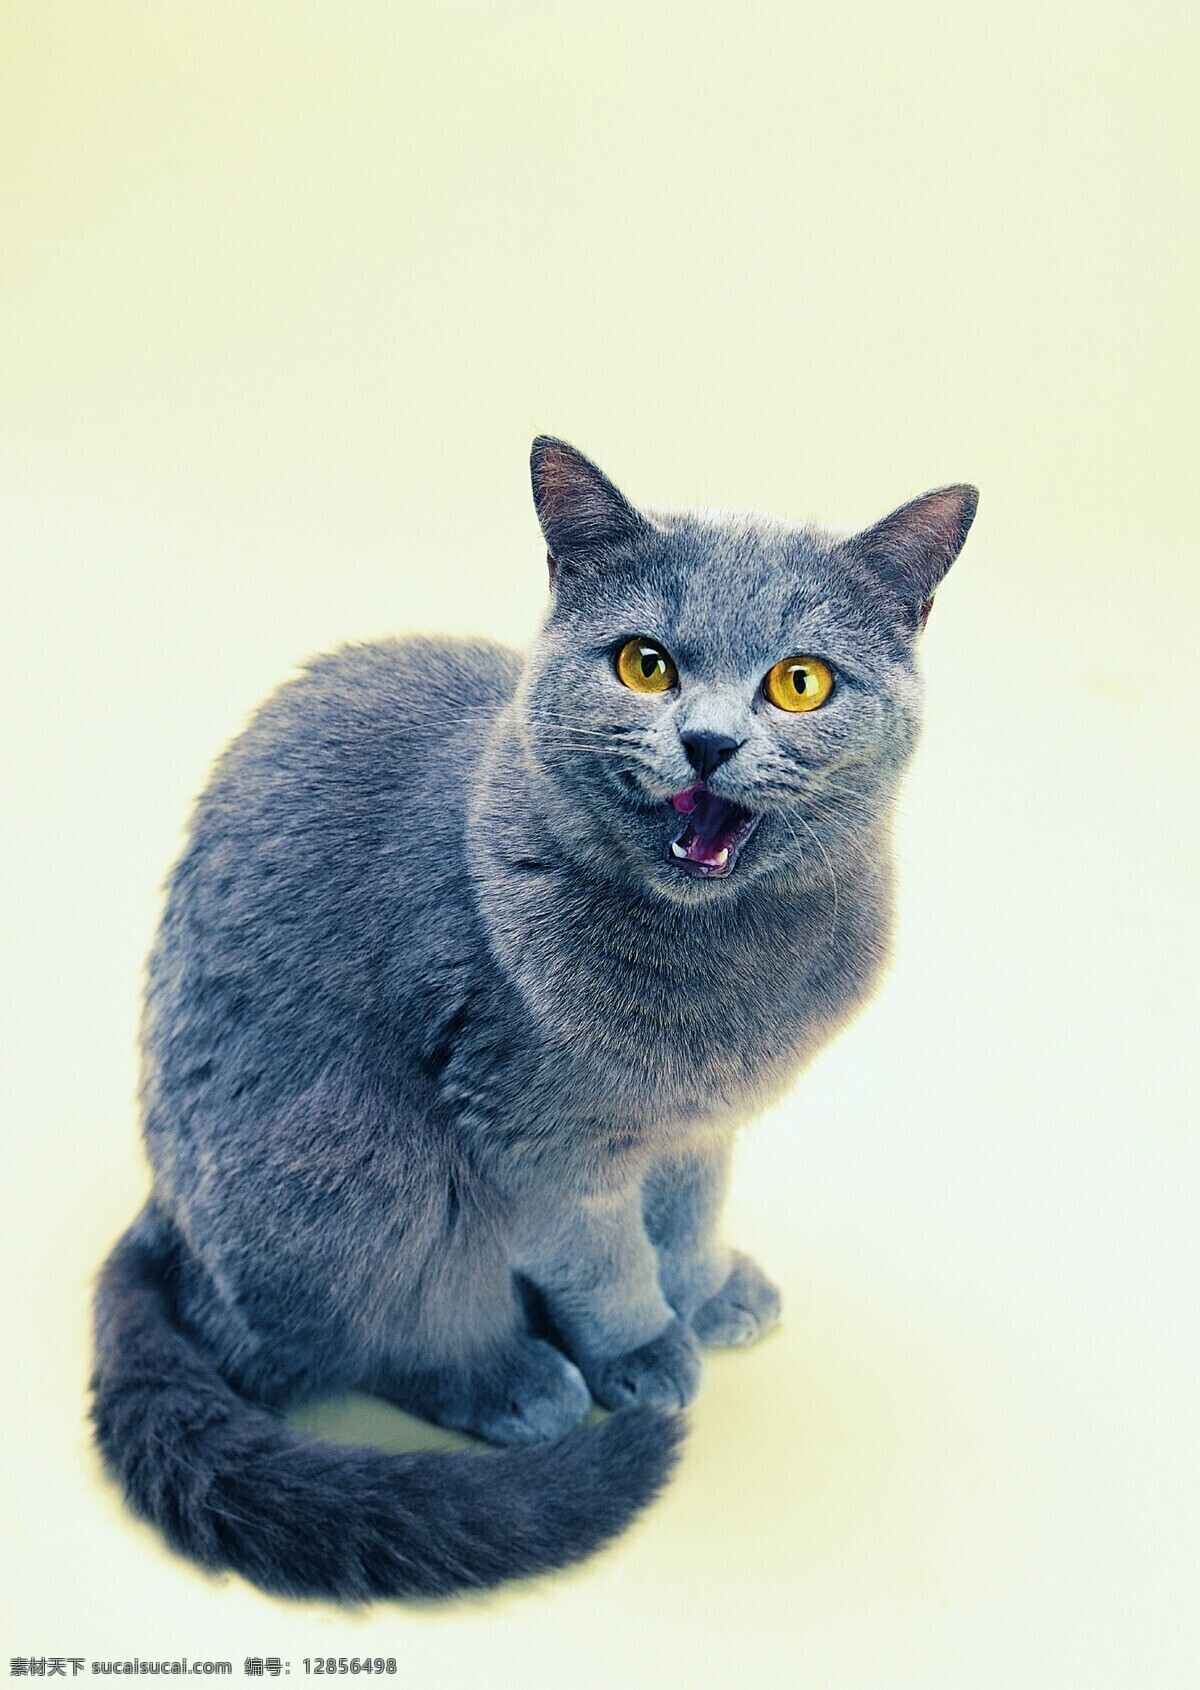 蓝猫 猫 黄猫 花猫 小猫 猫咪 宠物 动物 家庭宠物 动物写真 可爱 萌 家禽家畜 生物世界